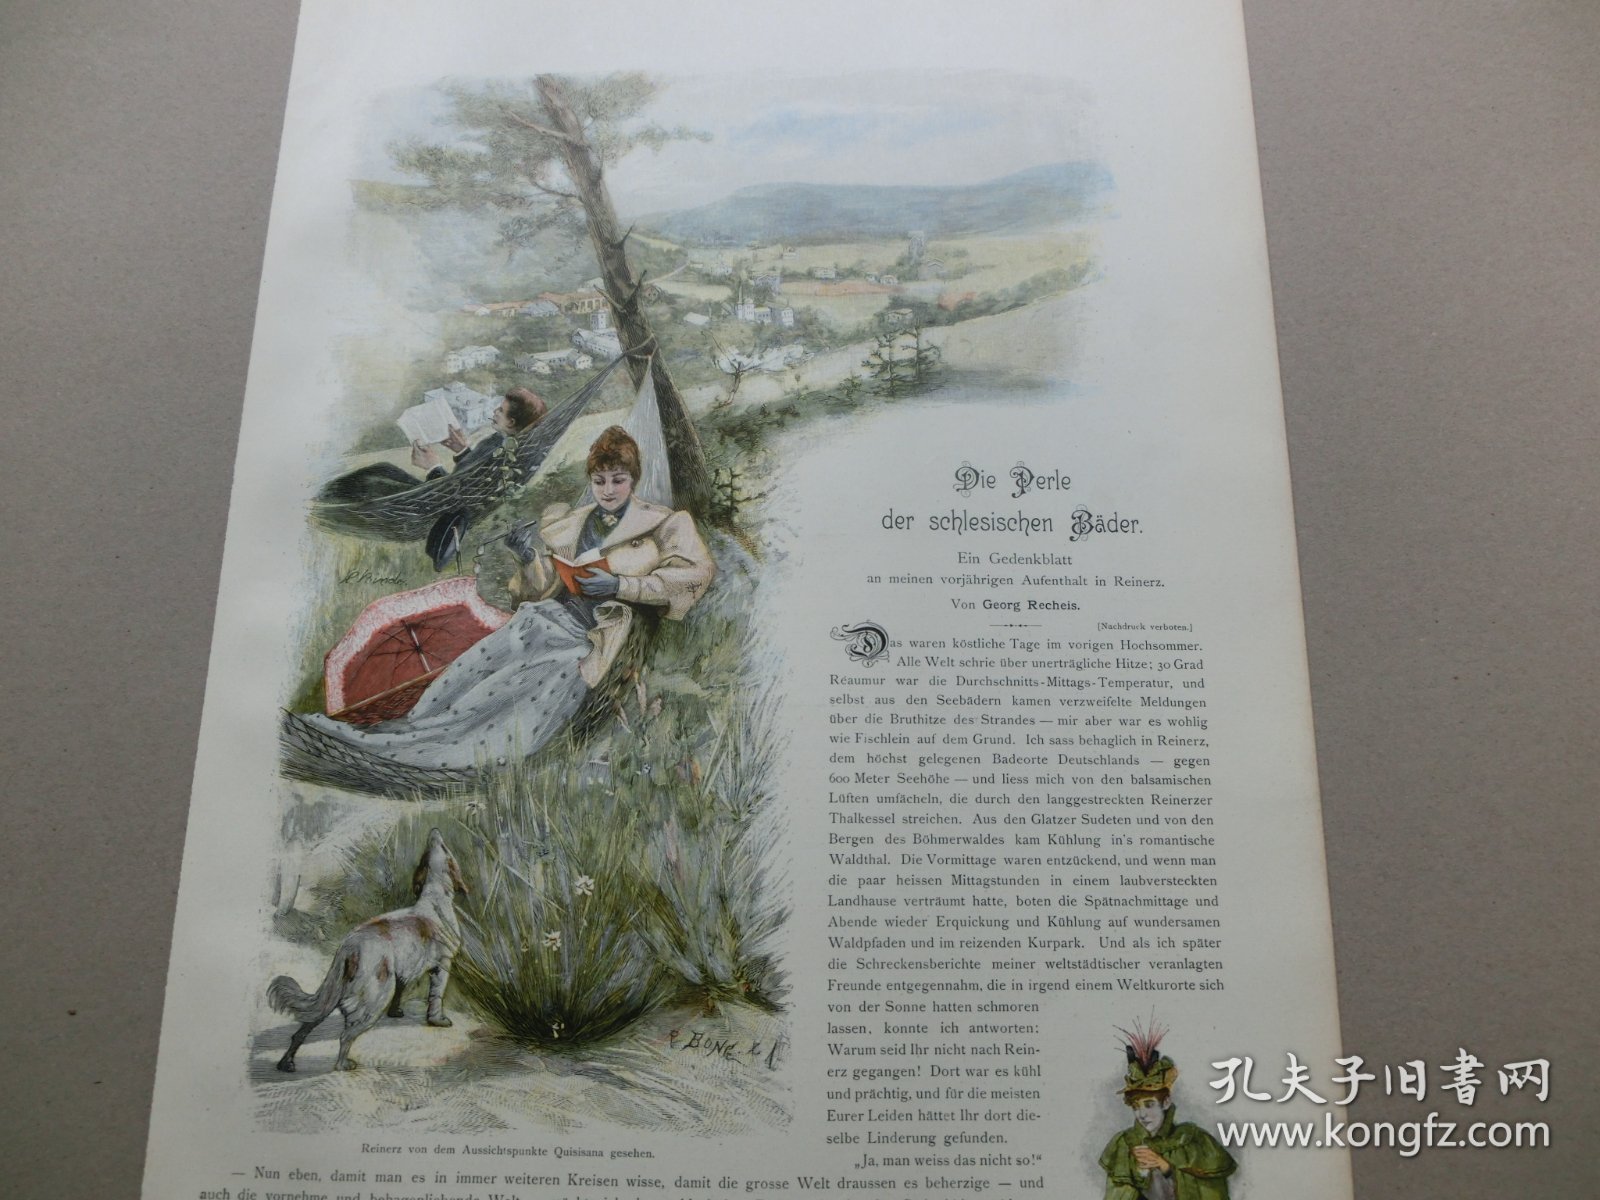 【百元包邮】《郊外休闲阅读》（Reinerz von dem Aussich spunkte quisisana gesehen）  1893年，套色木刻版画， 纸张尺寸约41×28厘米。